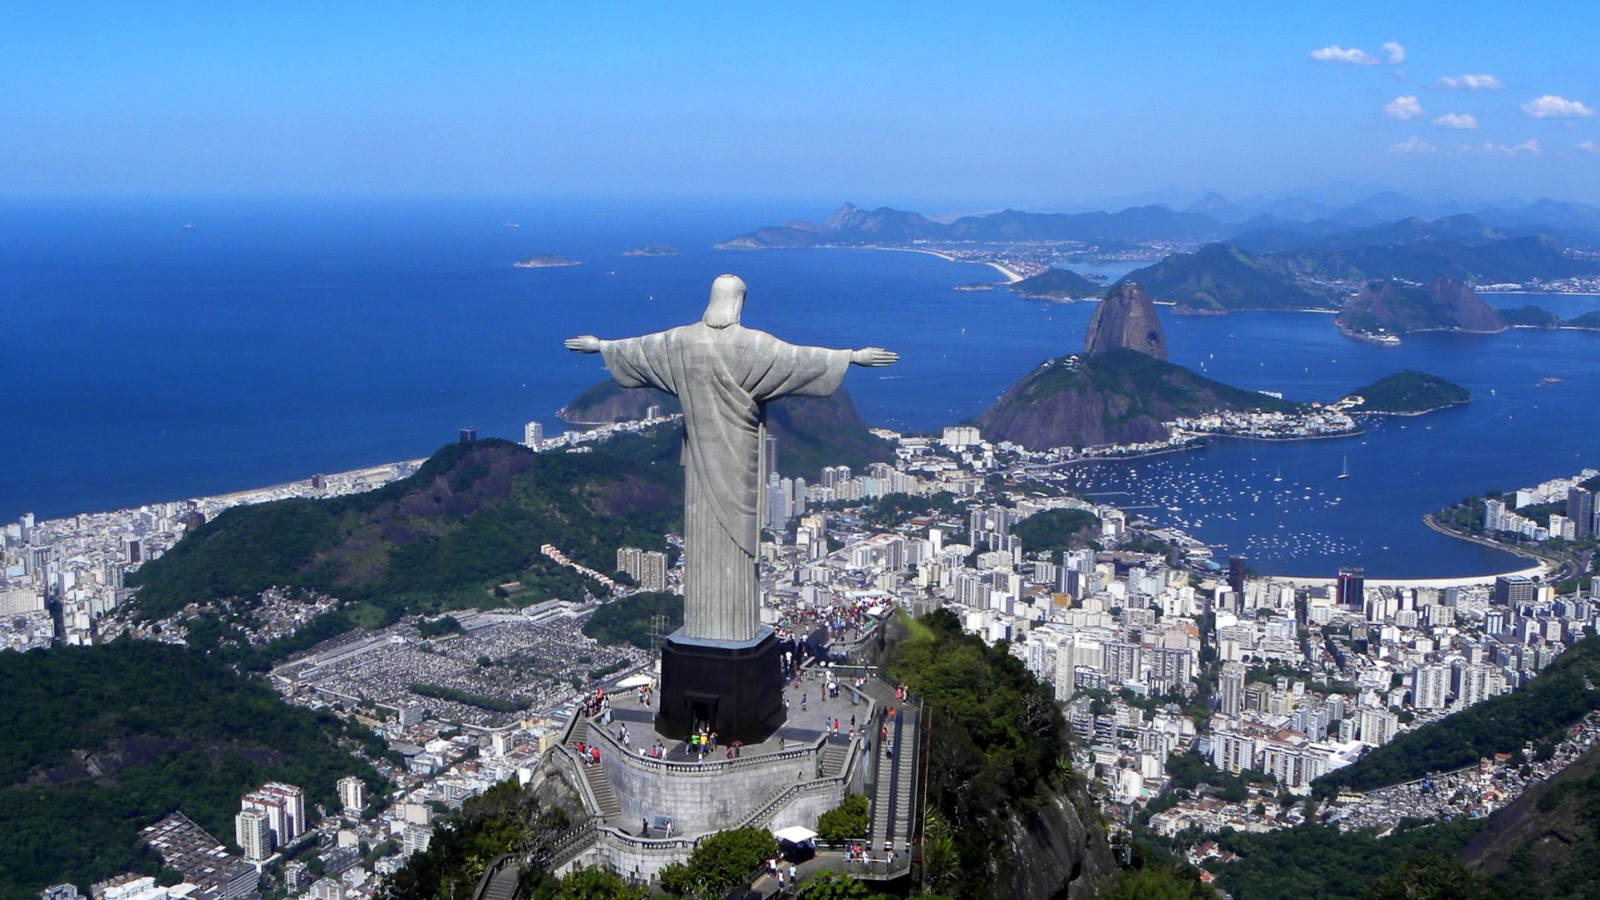 Das Christ the Redeemer statue in Rio de Janeiro Wallpaper 1600x900